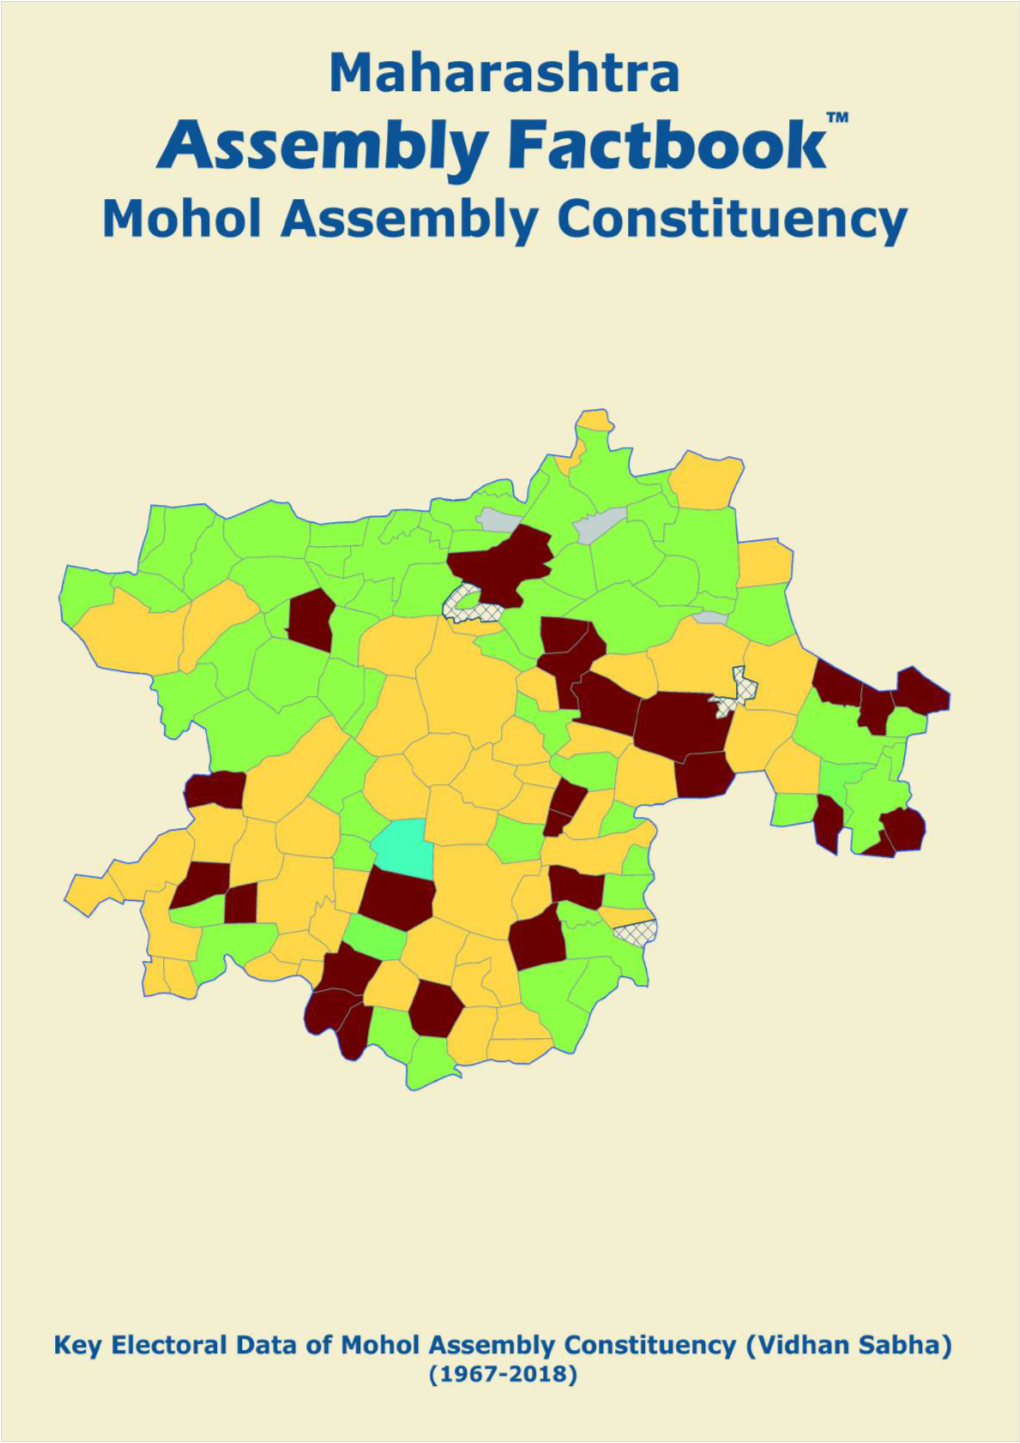 Mohol Assembly Maharashtra Factbook